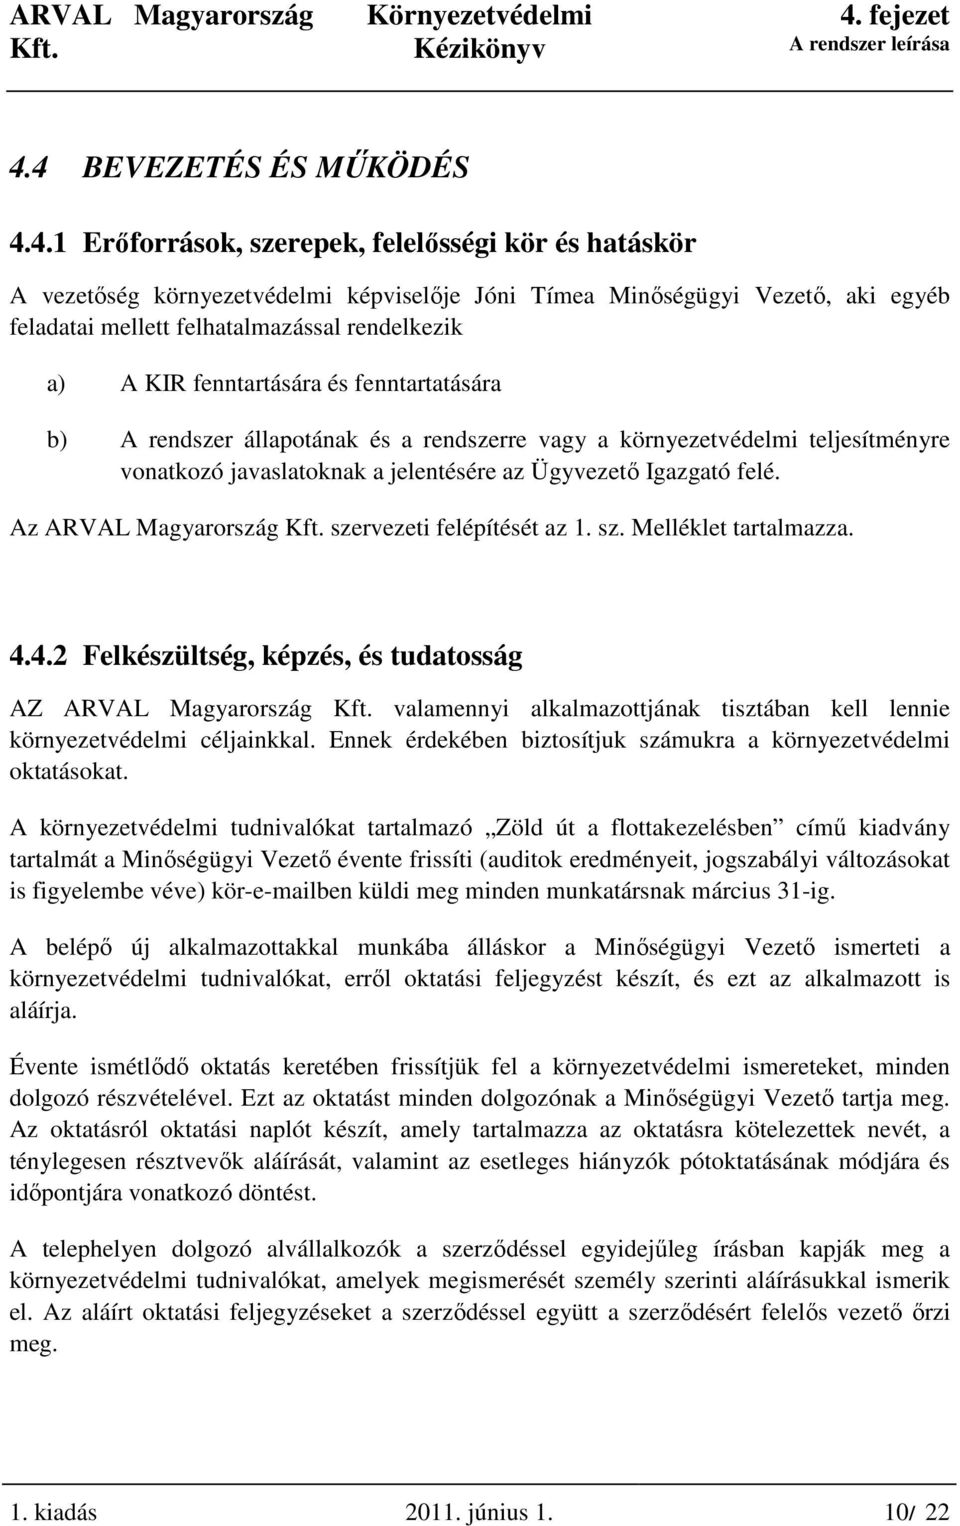 Az ARVAL Magyarország szervezeti felépítését az 1. sz. Melléklet tartalmazza. 4.